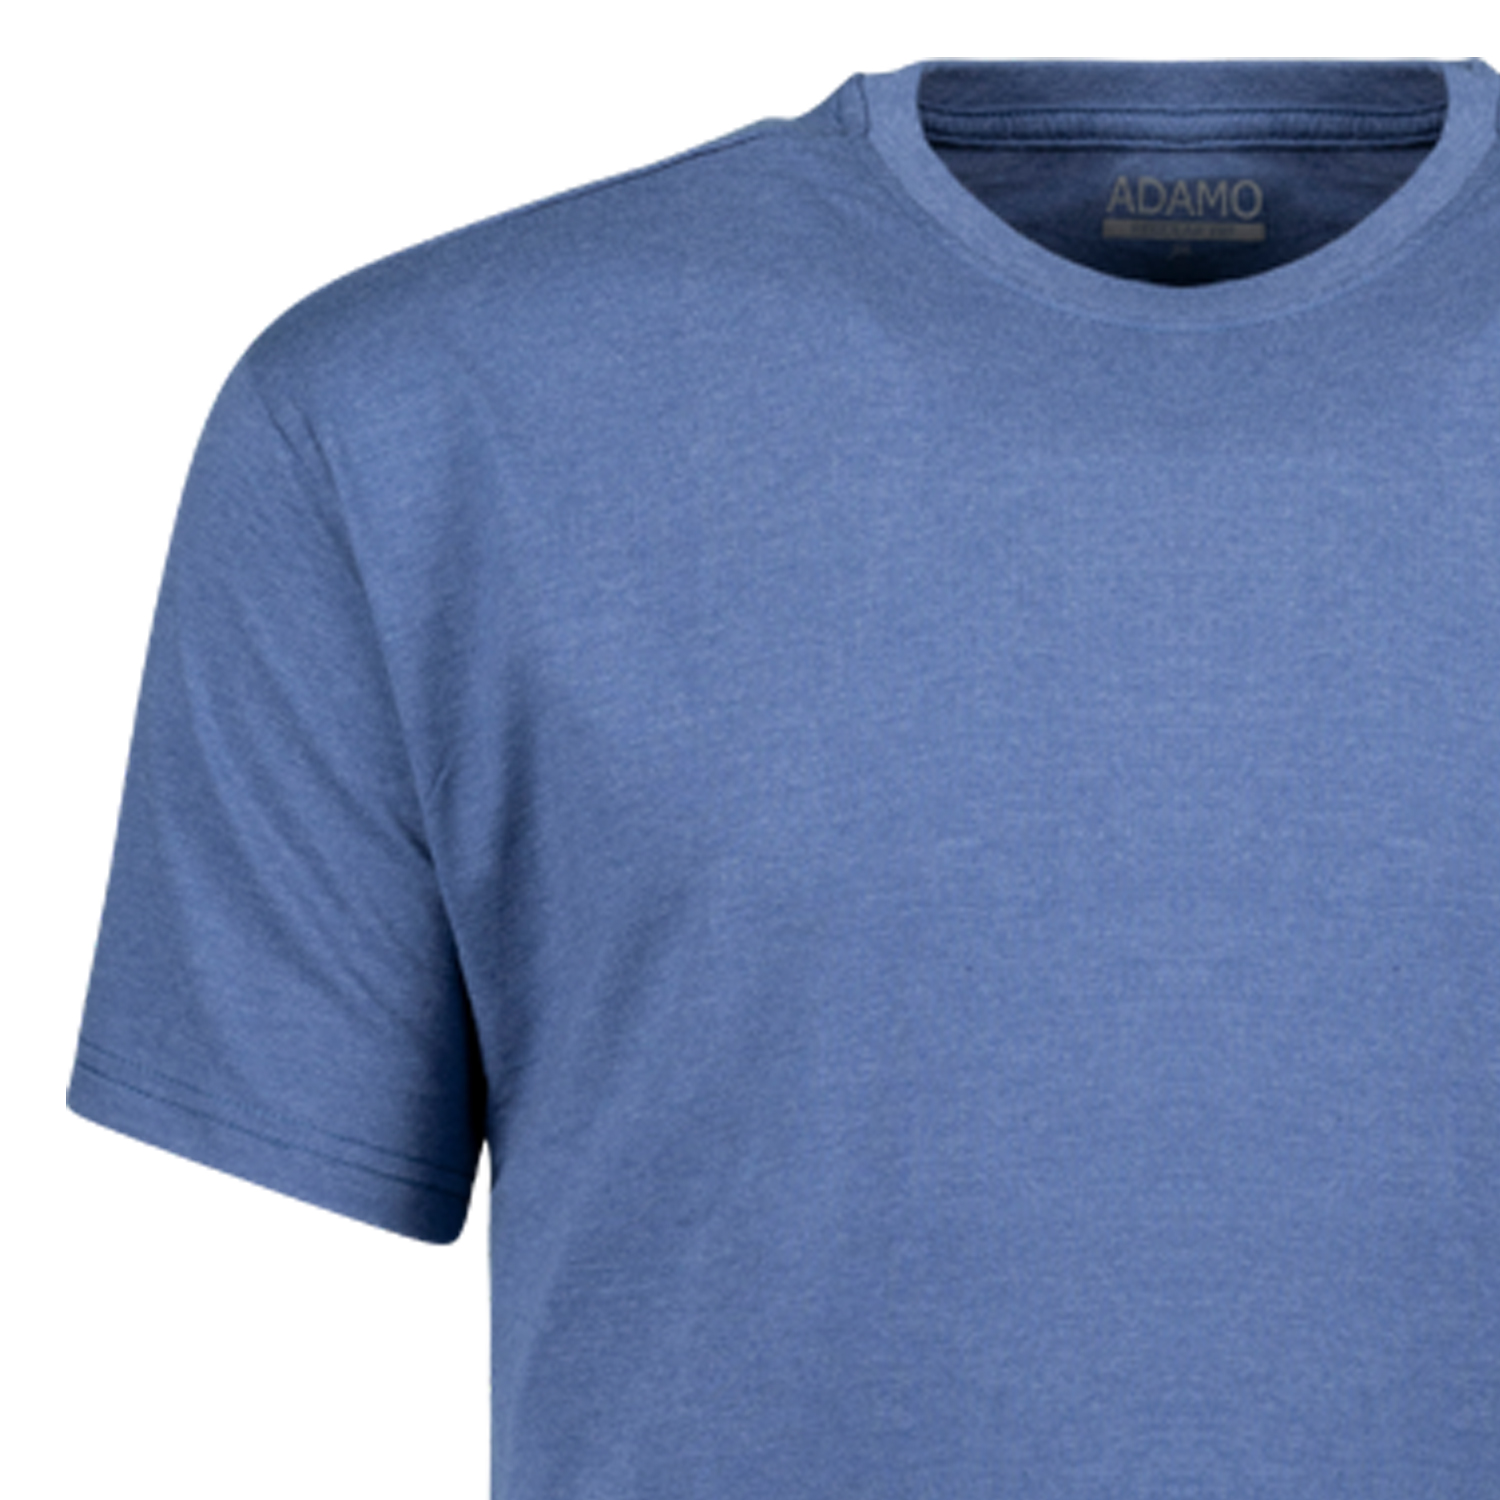 Jeansblaues Herren Übergrößen T-Shirt meliert 2XL-12XL von ADAMO Modell Kevin mit Rundhals